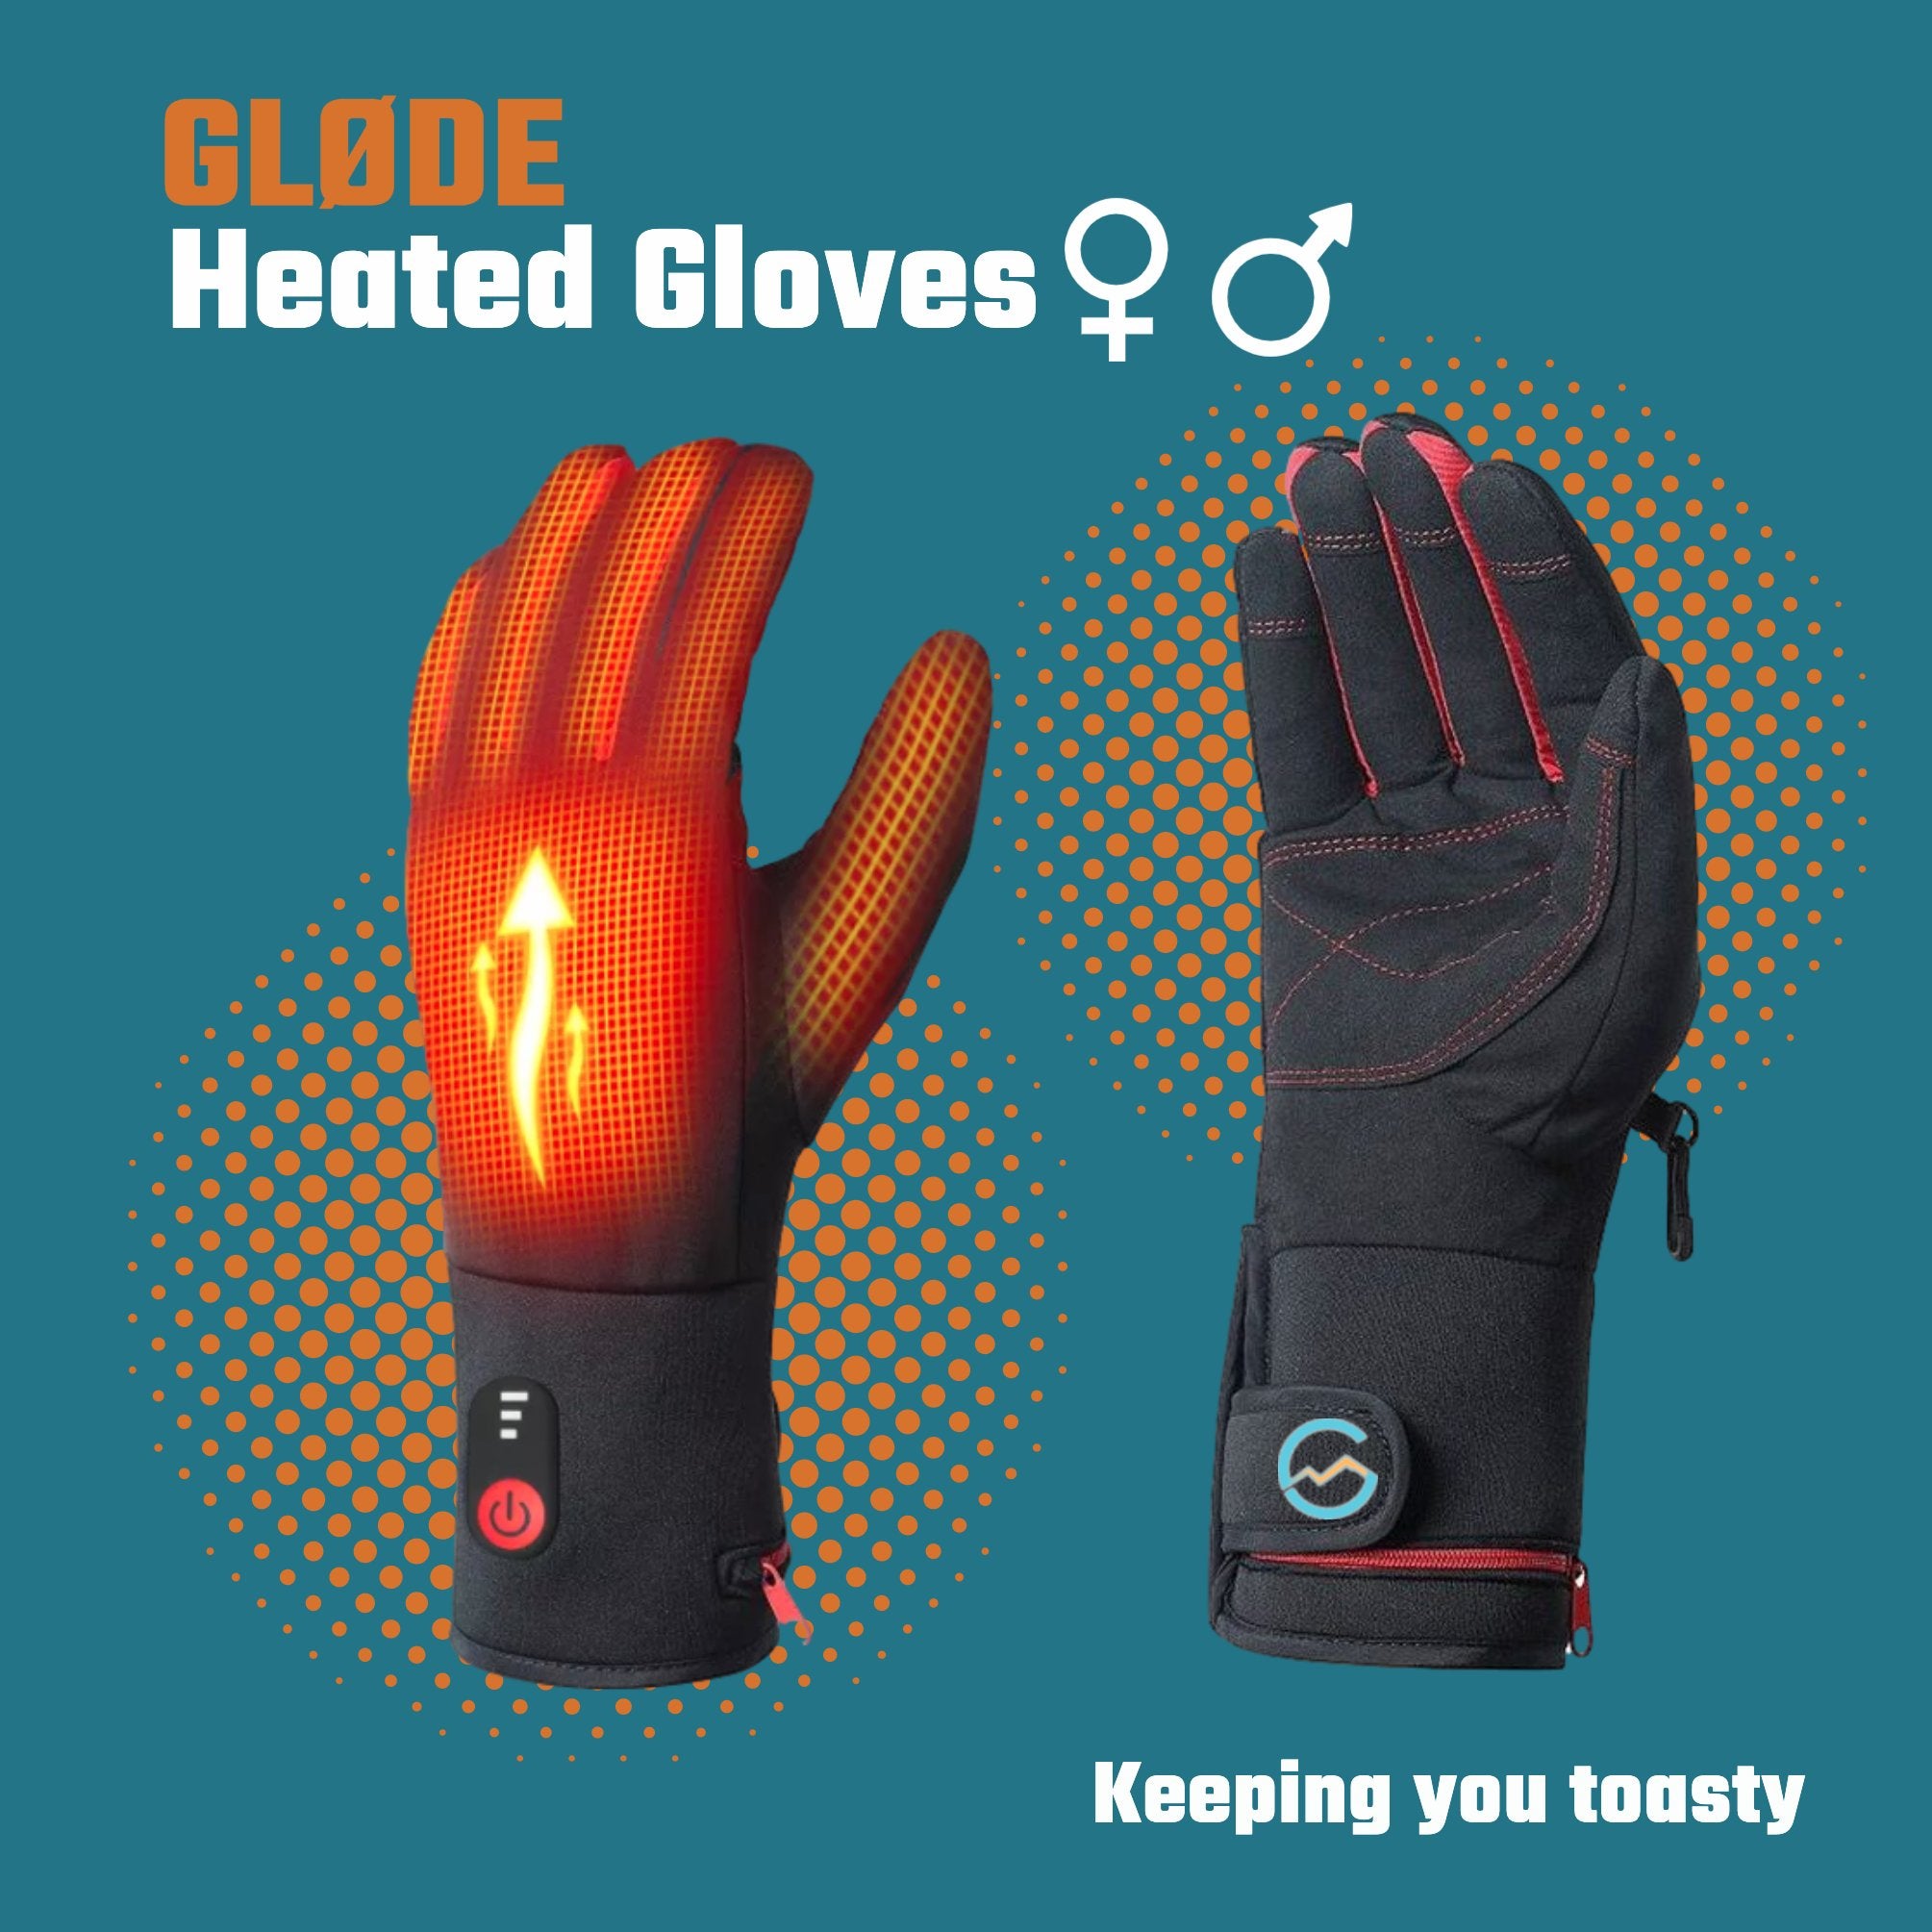 Elk jaar bovenste Allergie Verwarmde handschoenen kopen | Top kwaliteit en lekker warm!